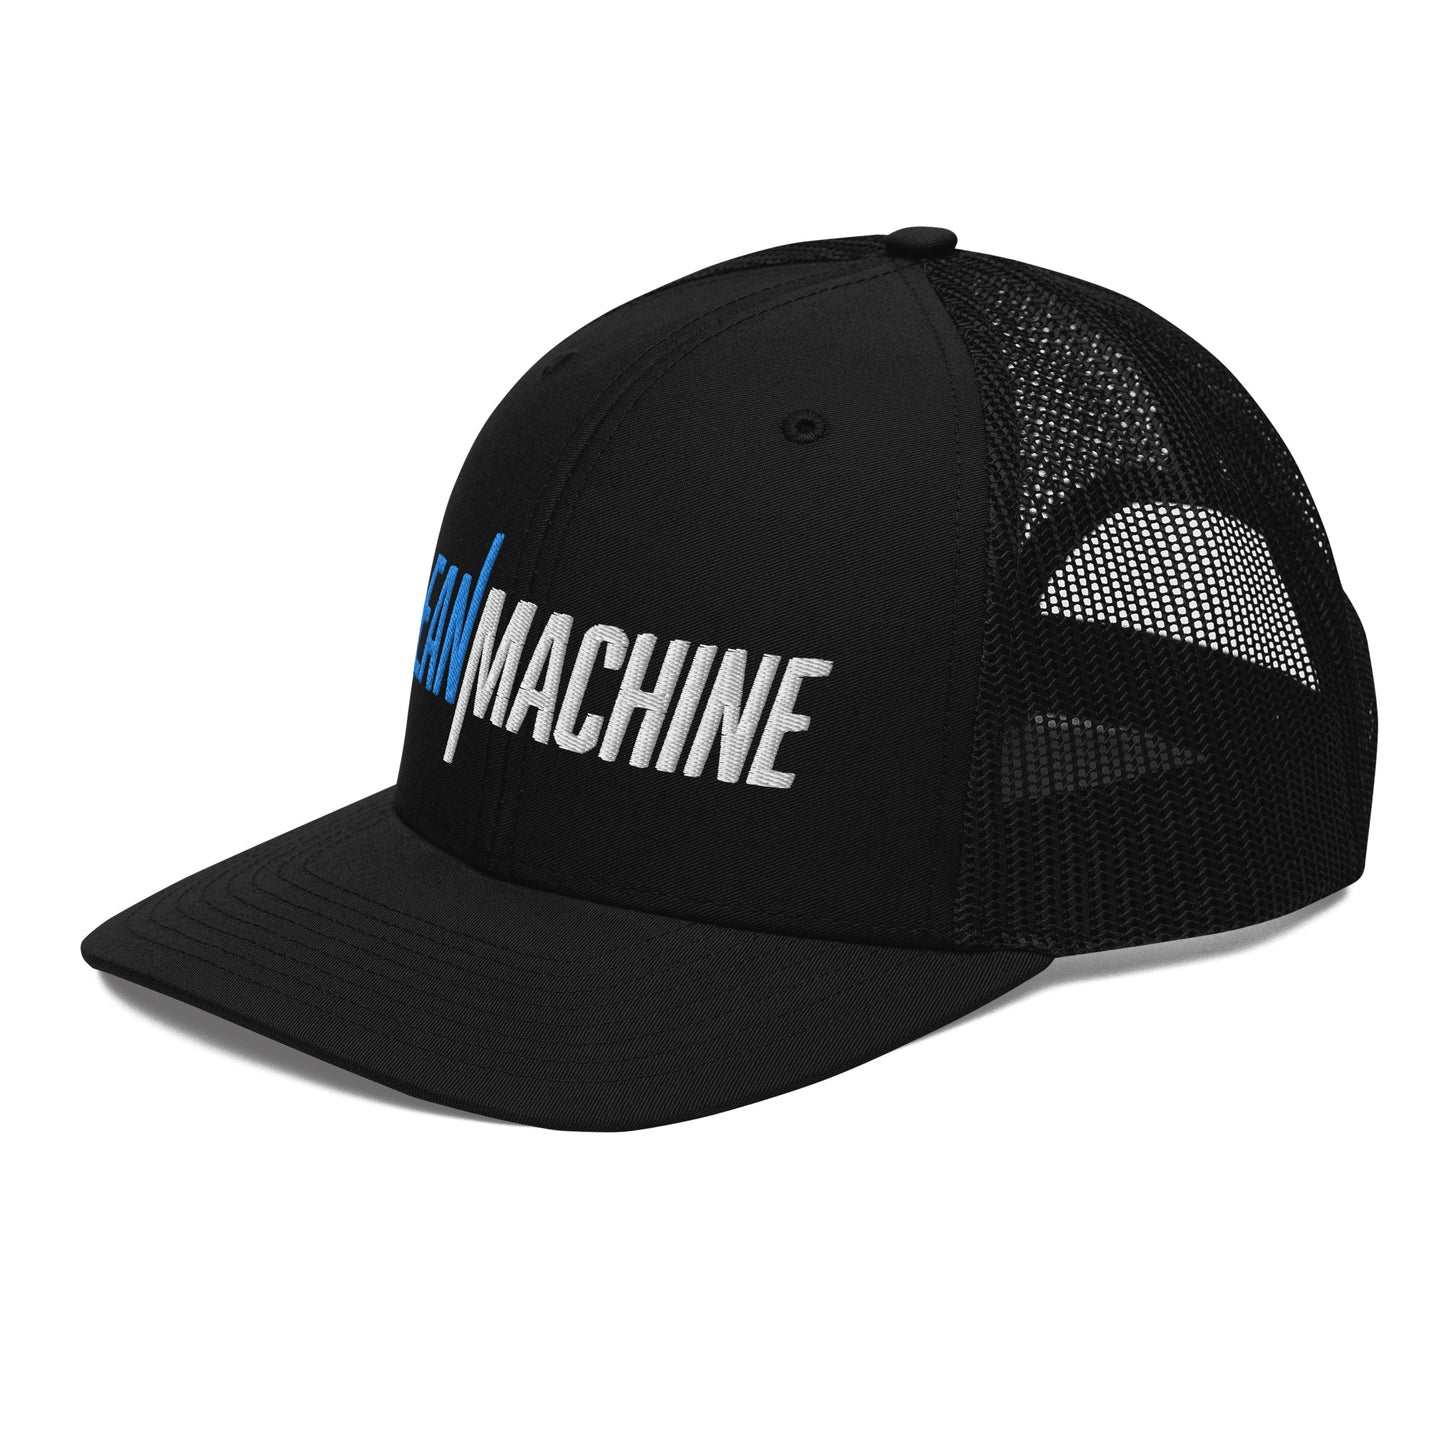 Lean Machine Trucker Cap